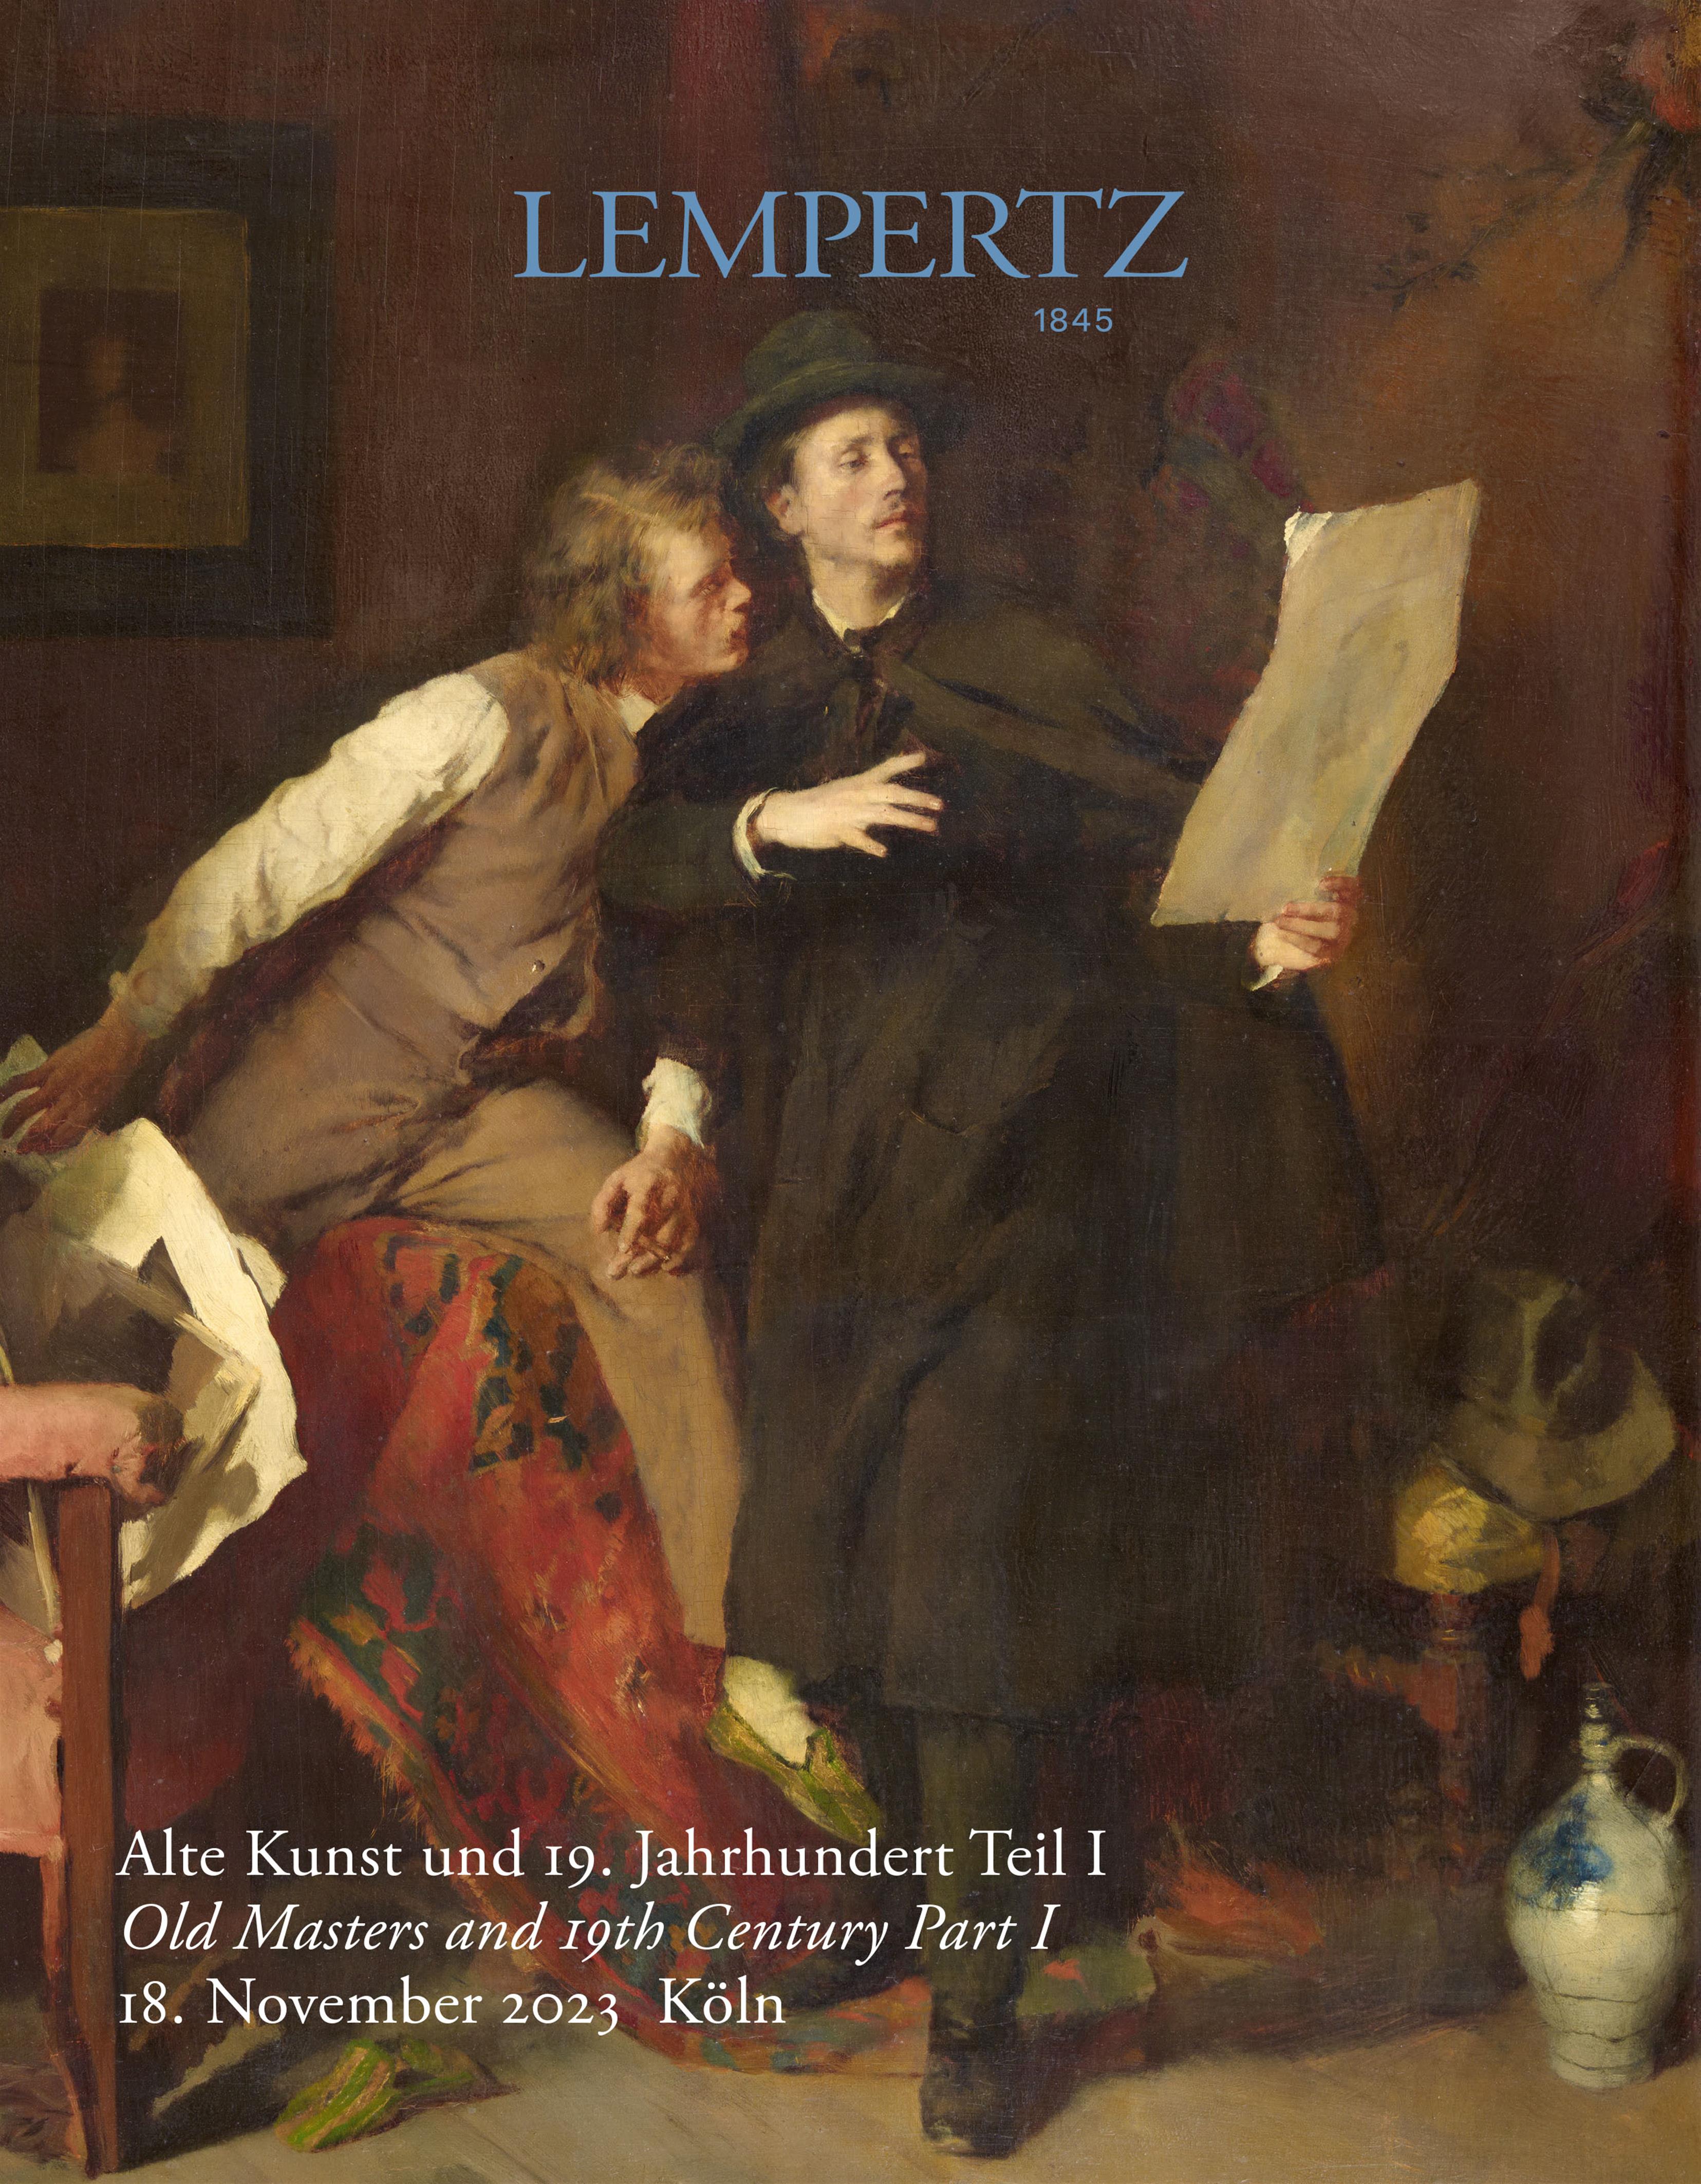 Auktionshaus - Alte Kunst und 19. Jahrhundert, Teil I - Auktionskatalog 1231 – Auktionshaus Lempertz